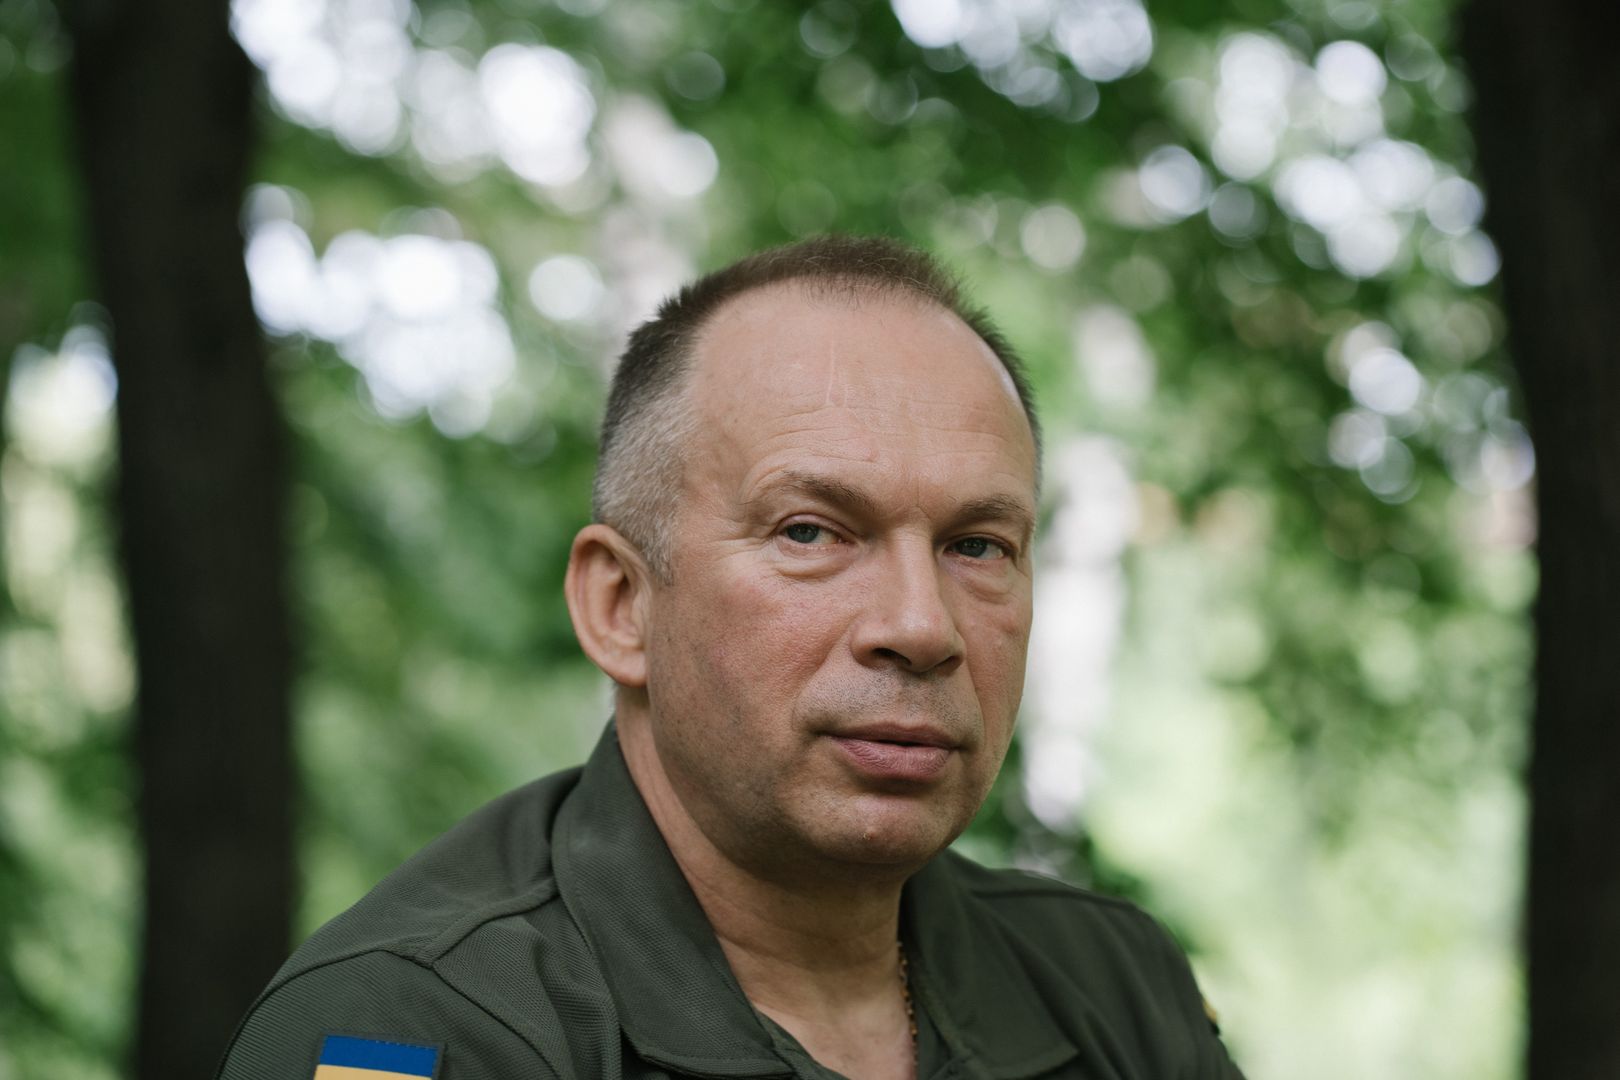 Ukraiński dowódca alarmuje. "Sytuacja się pogorszyła"